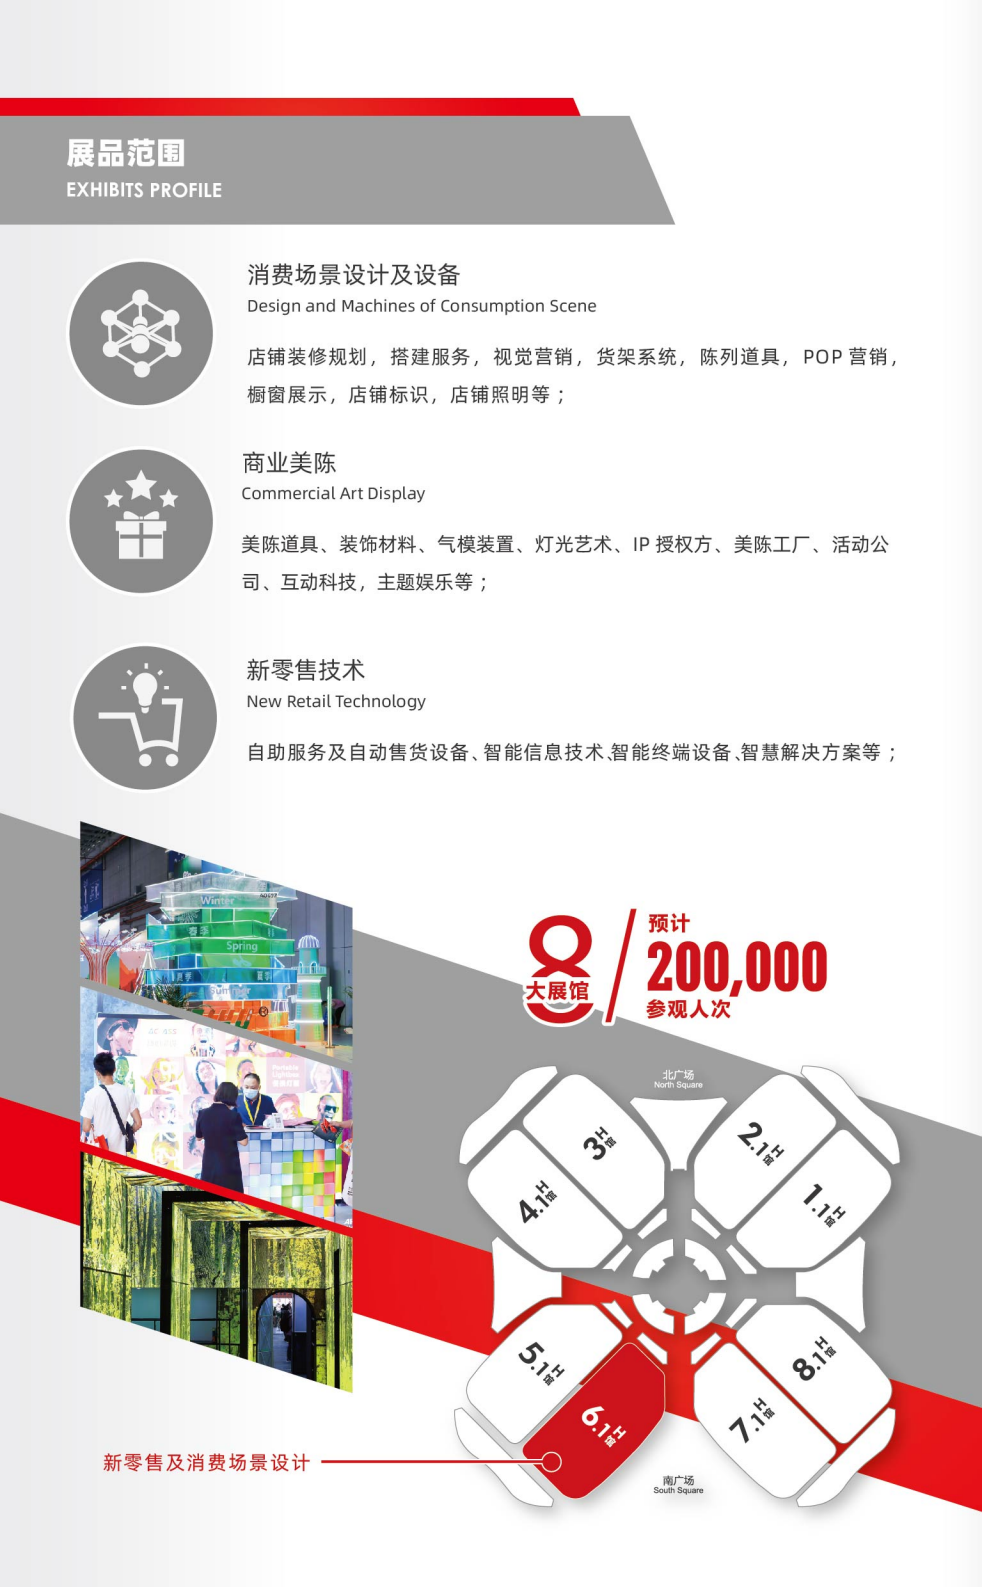 上海國際新零售及消費場景設計展覽會